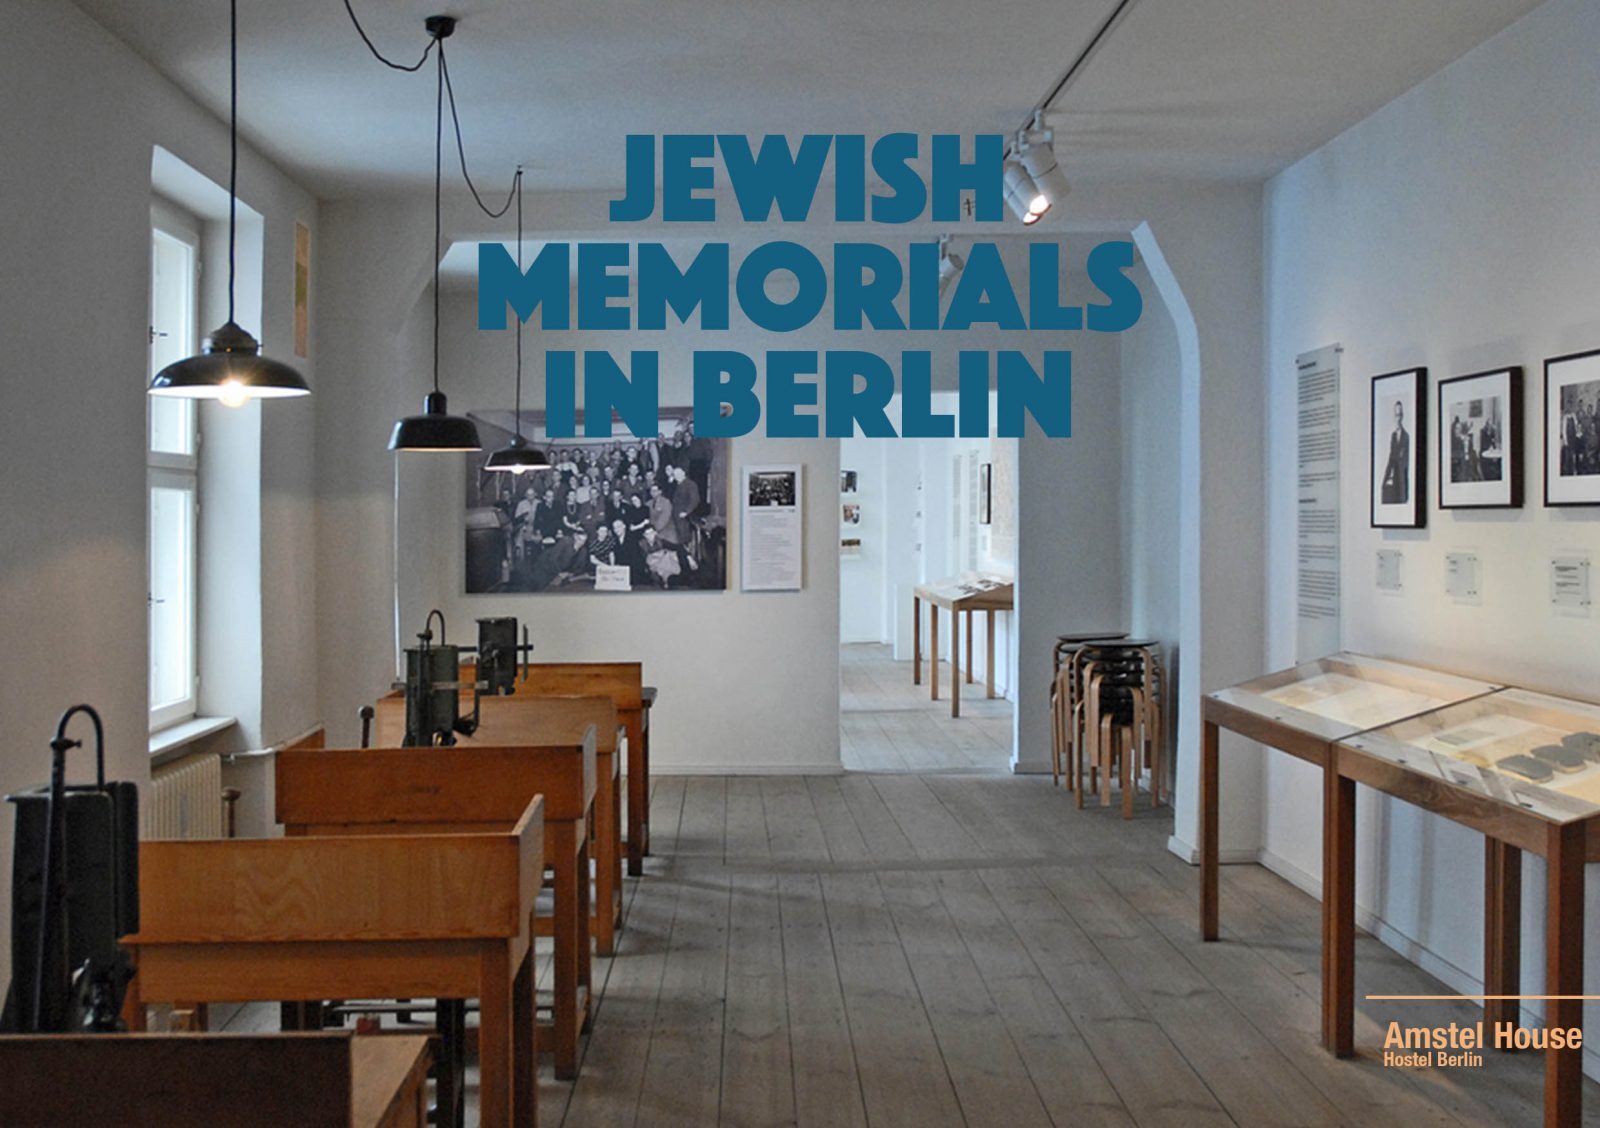 Berlin Holocaust Memorial Guide - Jewish memorials in Berlin